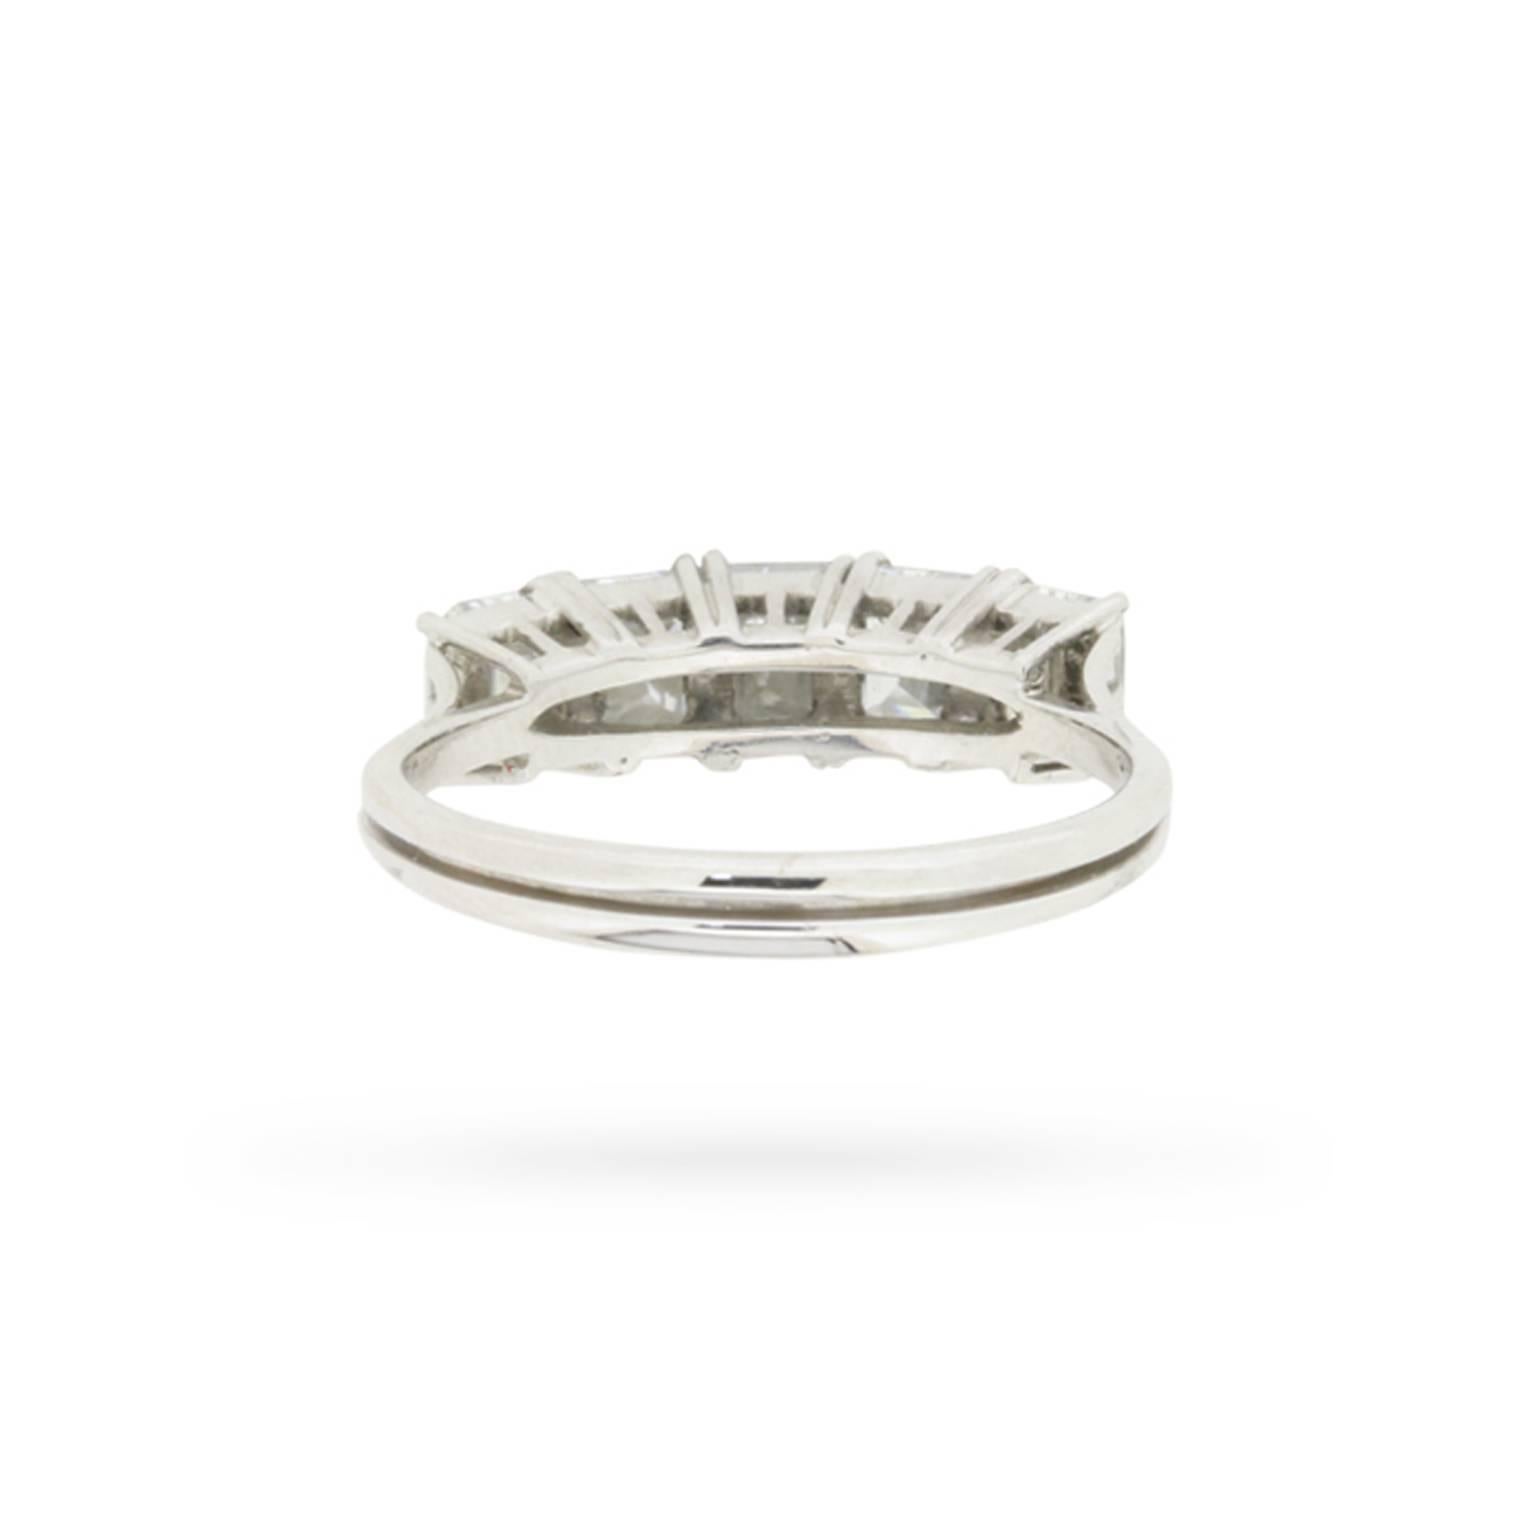 Women's or Men's Asscher Cut Five Stone Diamond Ring circa 1960s